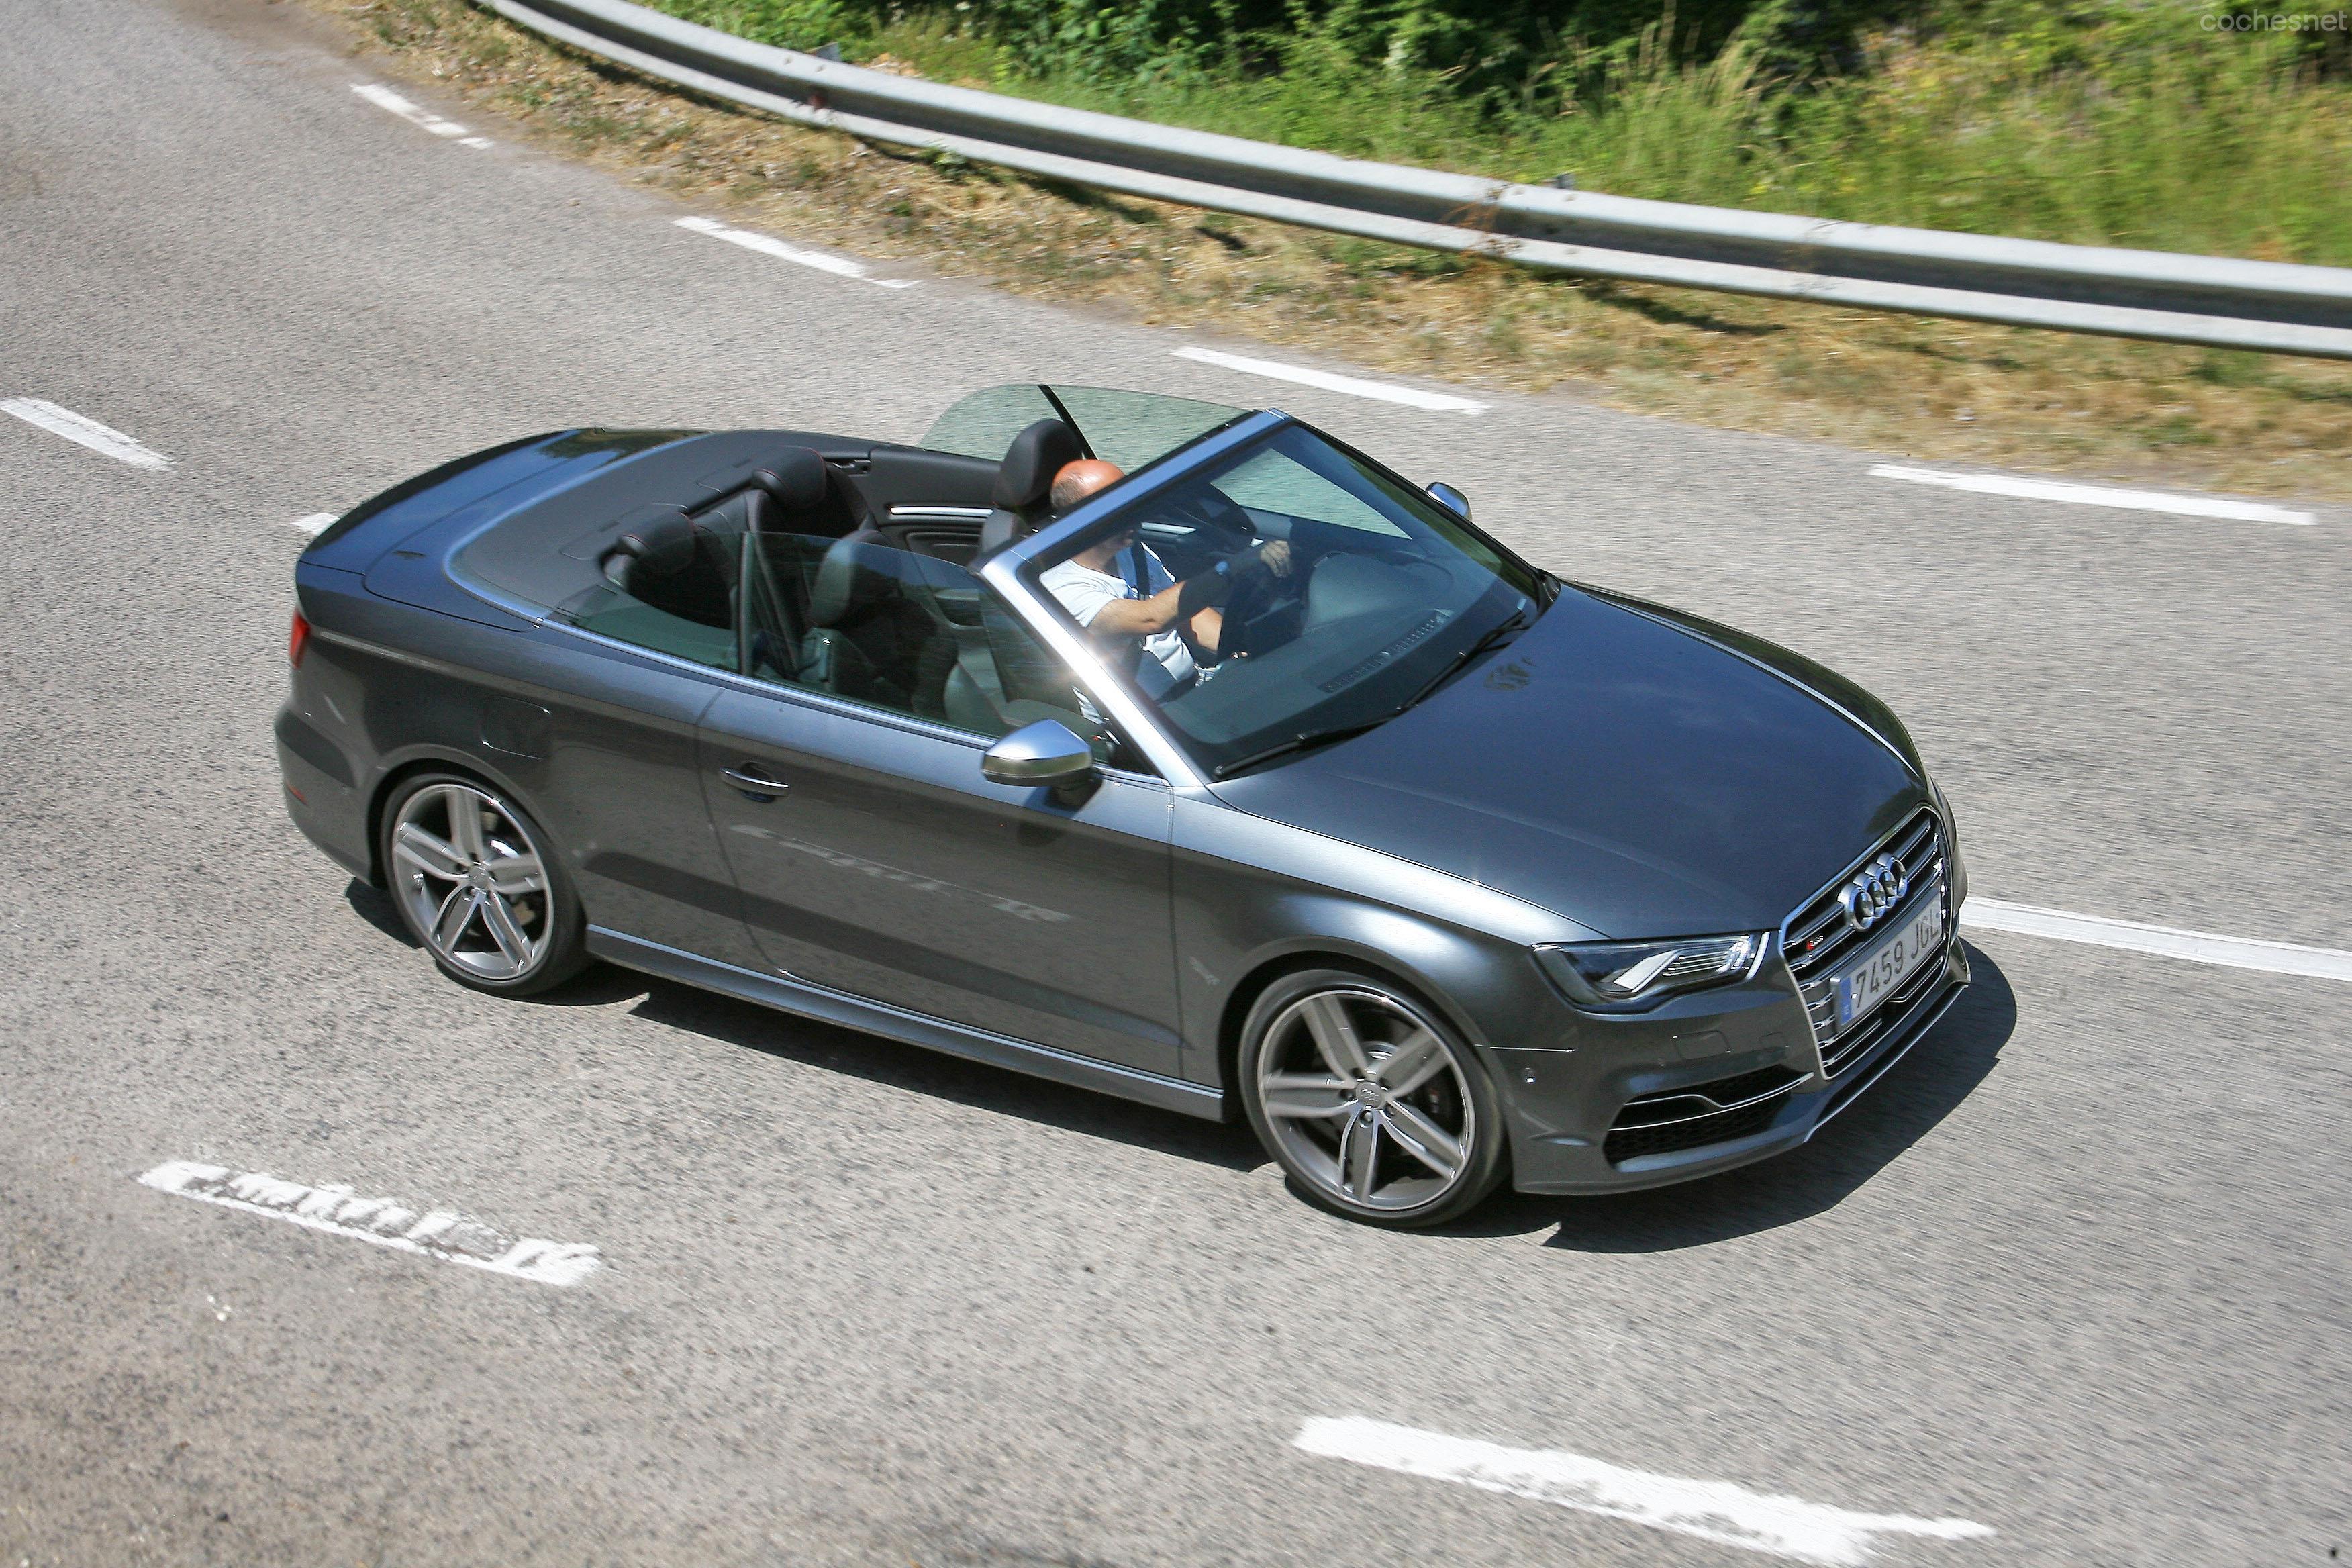 El Audi S3 cabrio es tan excitante llevándolo de forma deportiva como disfrutando tranquilamente del paisaje por carretera.
